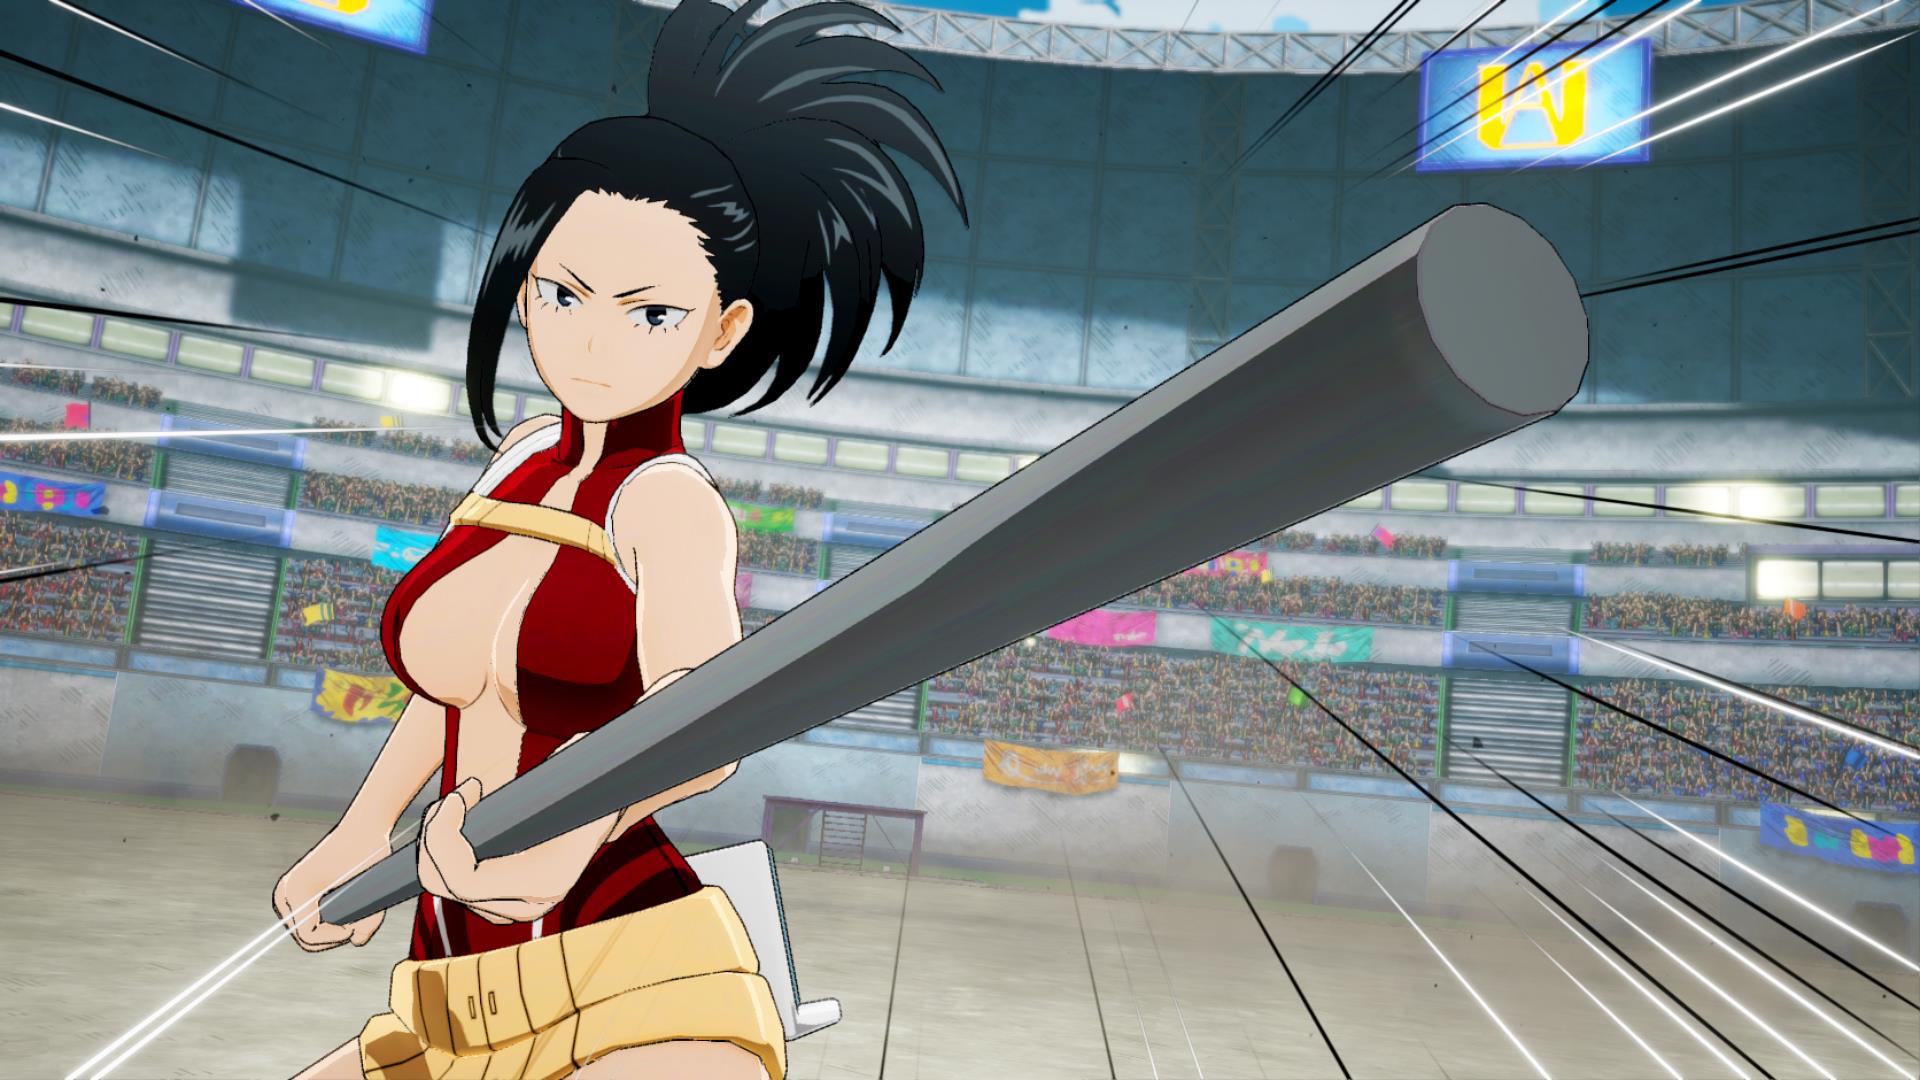 My Hero Academia: One's Justice screenshots feature Tsuyu Asui, Denki Kaminari, Momo Yaoyorozu